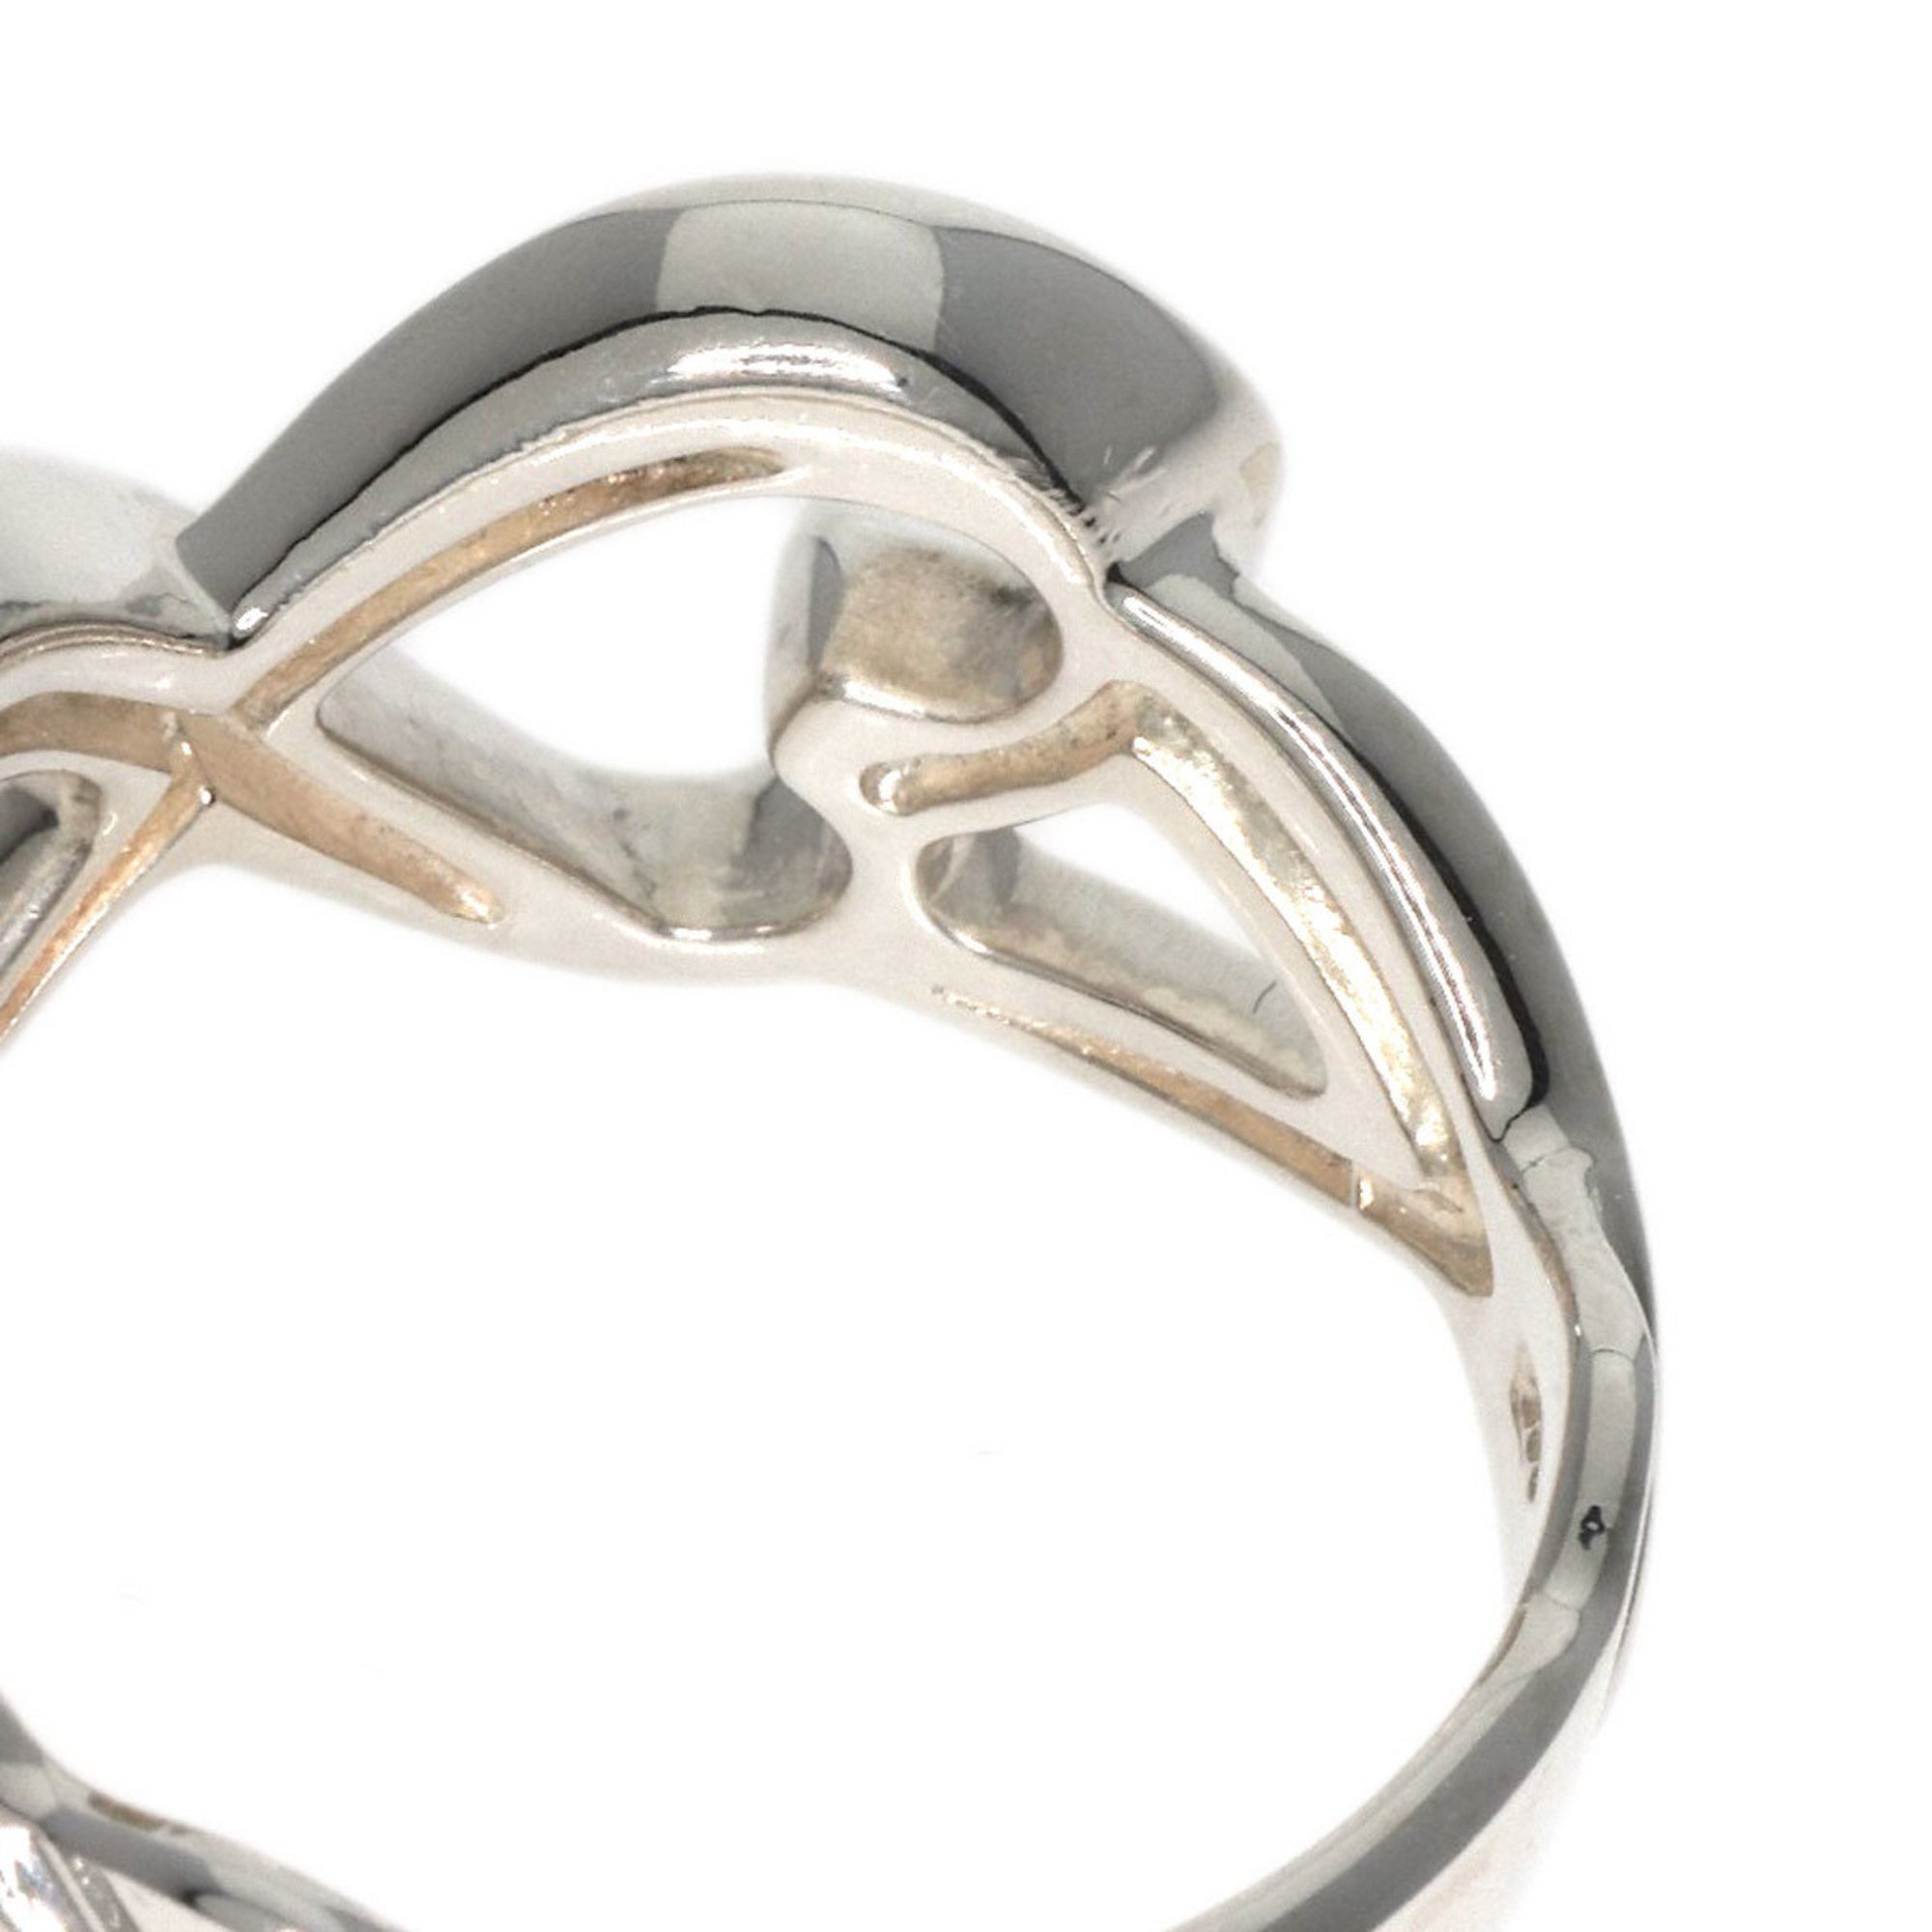 Tiffany Double Loving Heart Ring, Silver, Women's